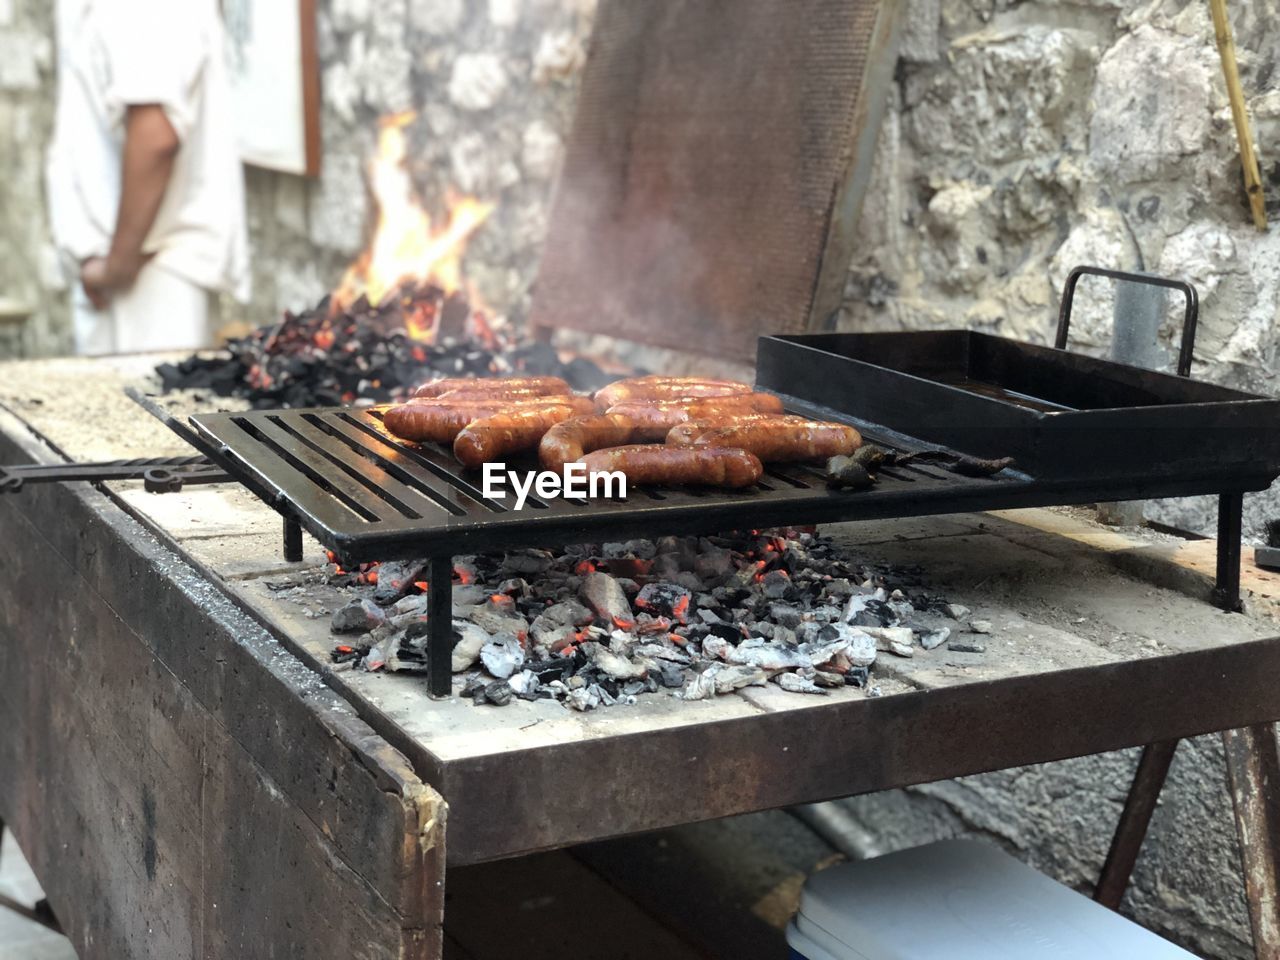 Croatia rabska barbecue